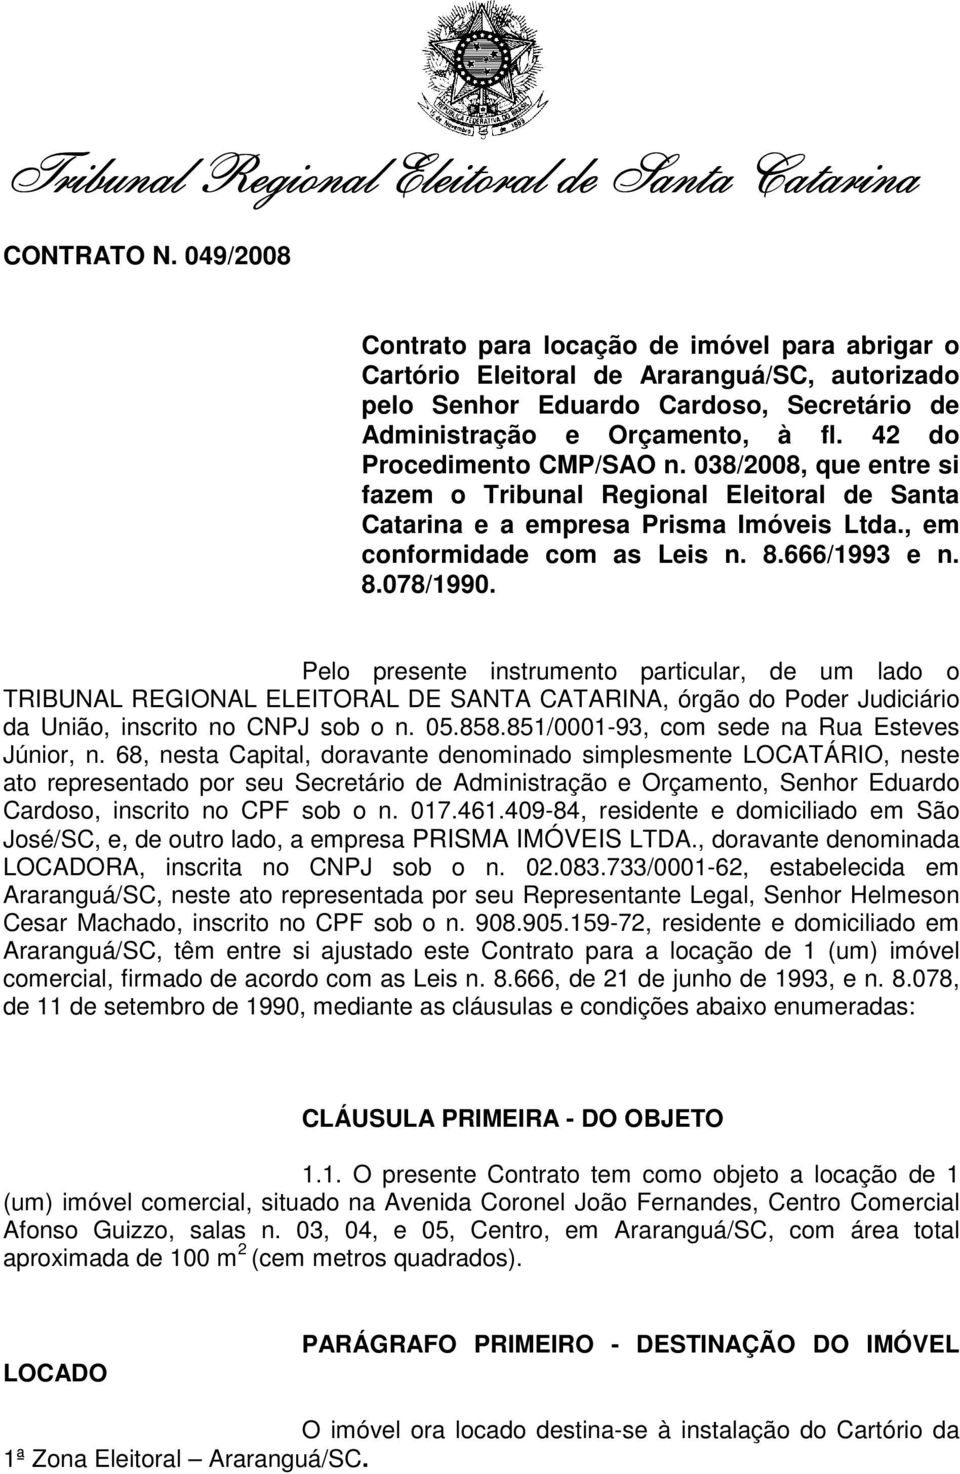 42 do Procedimento CMP/SAO n. 038/2008, que entre si fazem o Tribunal Regional Eleitoral de Santa Catarina e a empresa Prisma Imóveis Ltda., em conformidade com as Leis n. 8.666/1993 e n. 8.078/1990.